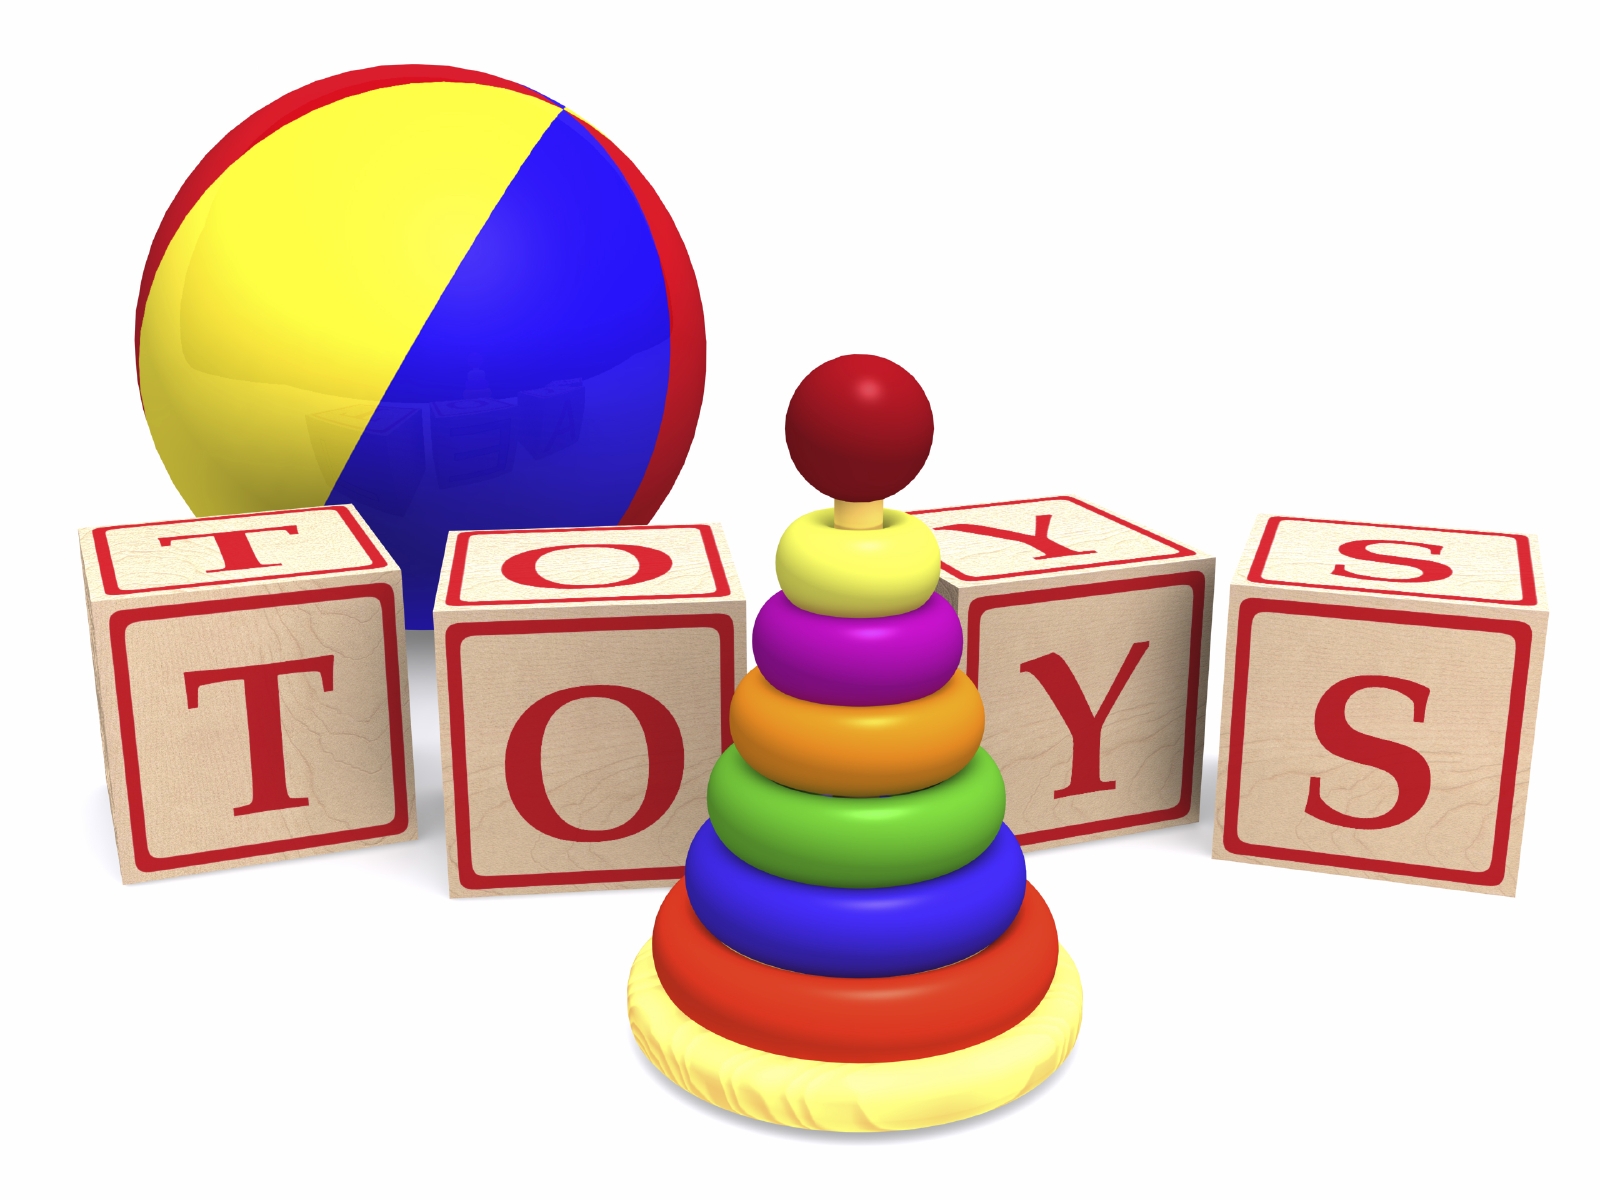 kinh nghiệm kinh doanh đồ chơi trẻ em đem đến lợi nhuận Không ngờ cho người kinh doanh